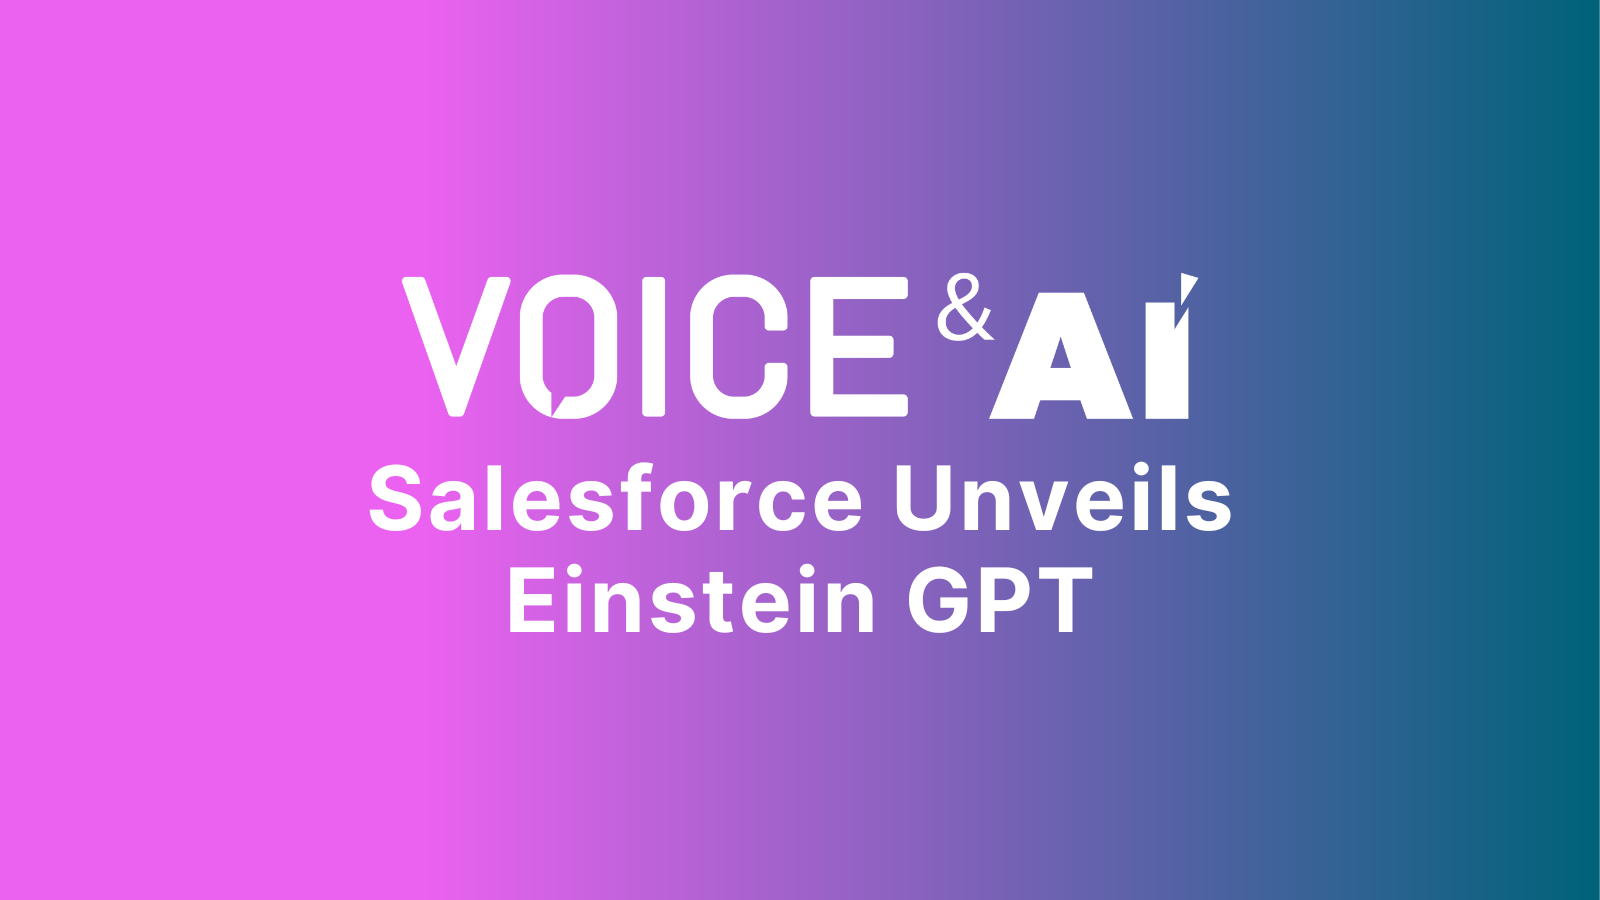 Salesforce Unveils Einstein GPT